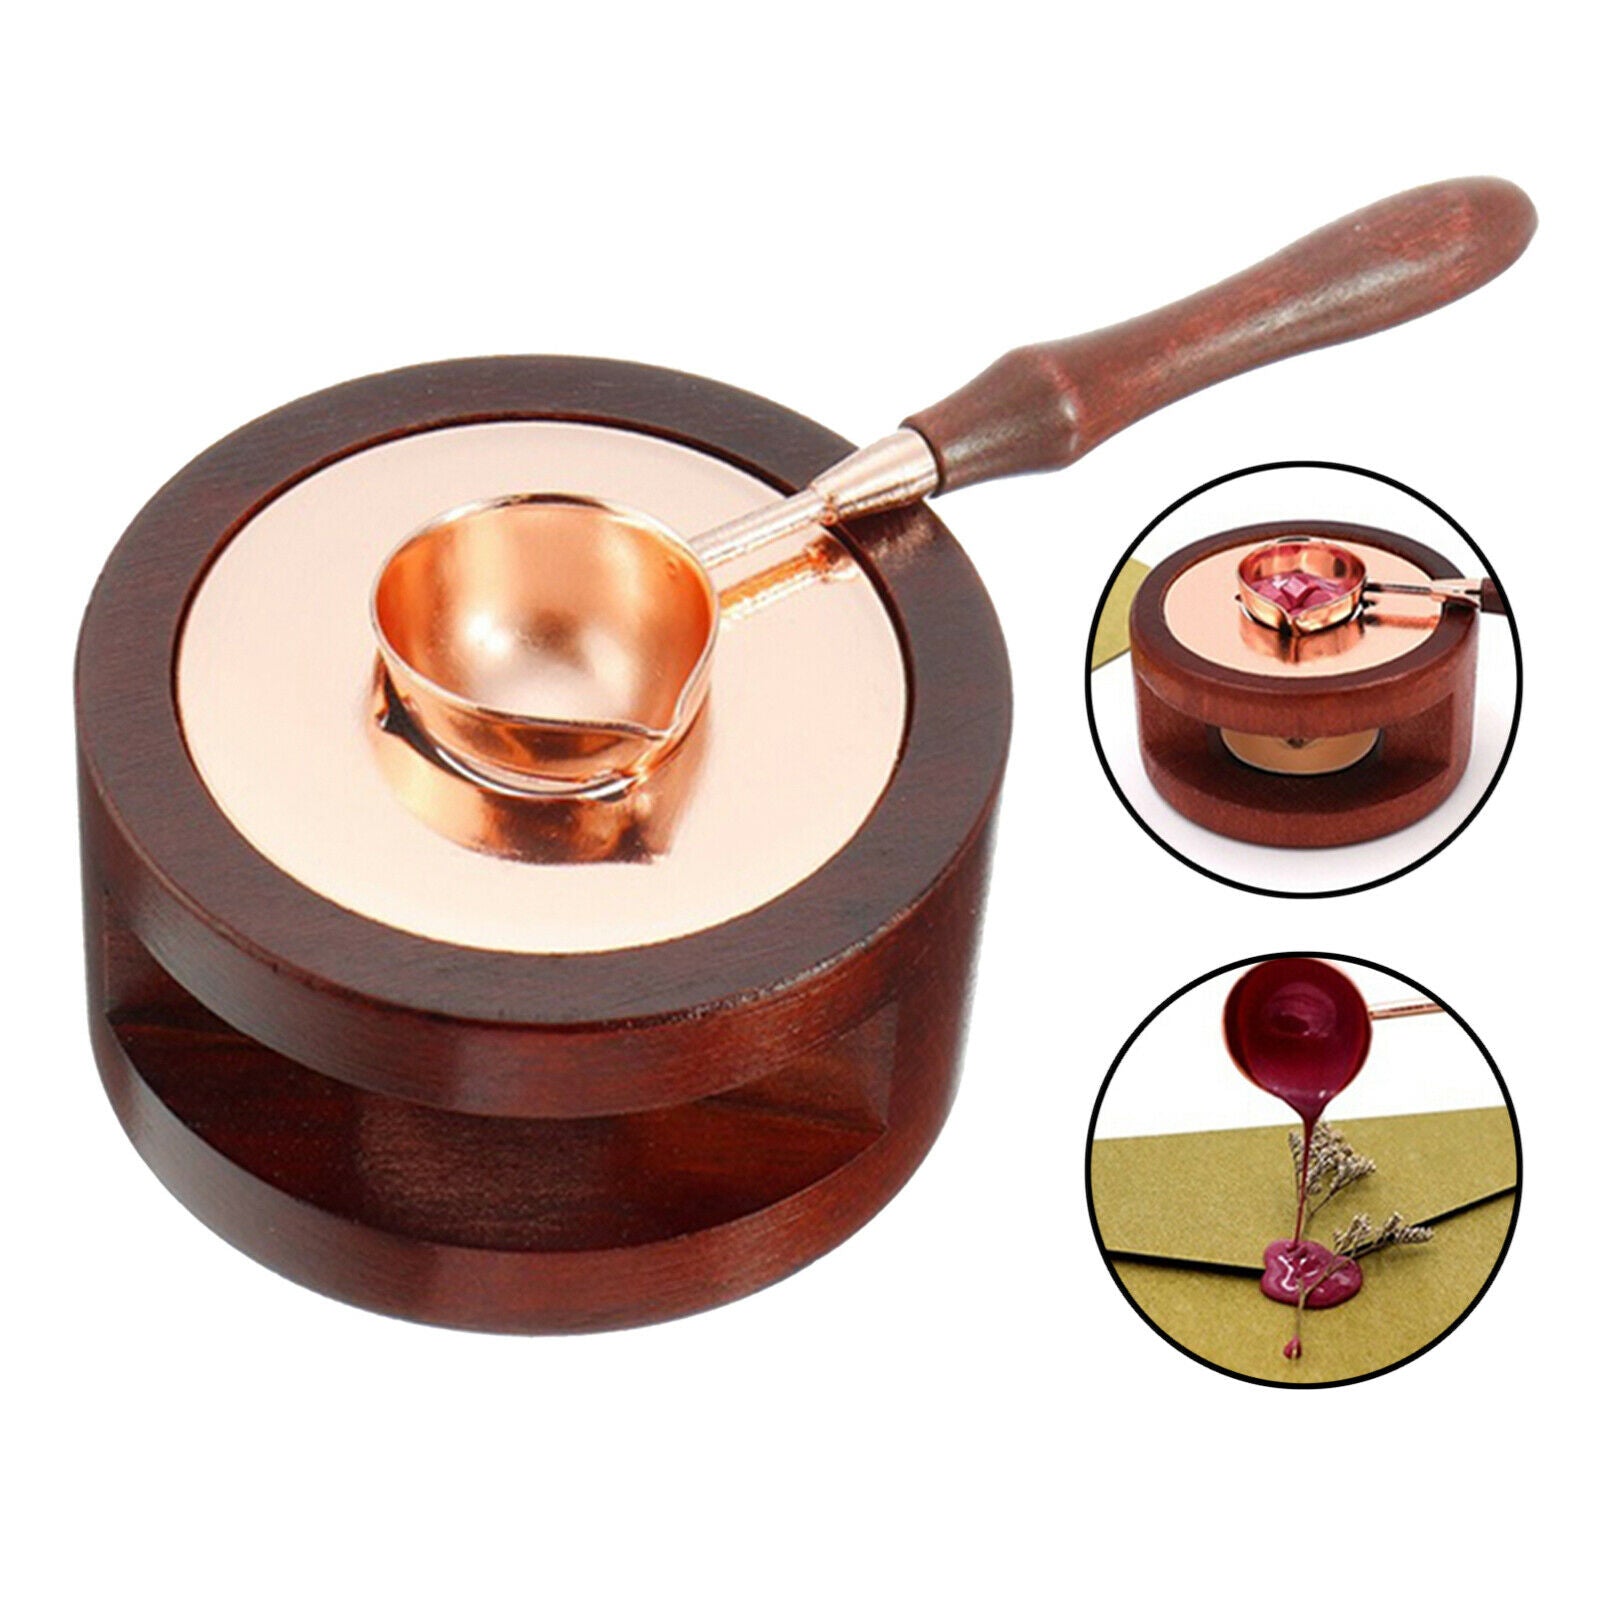 Wax Melting Wax Tripod Furnace Included Wood Handle Sealing Wax Spoon